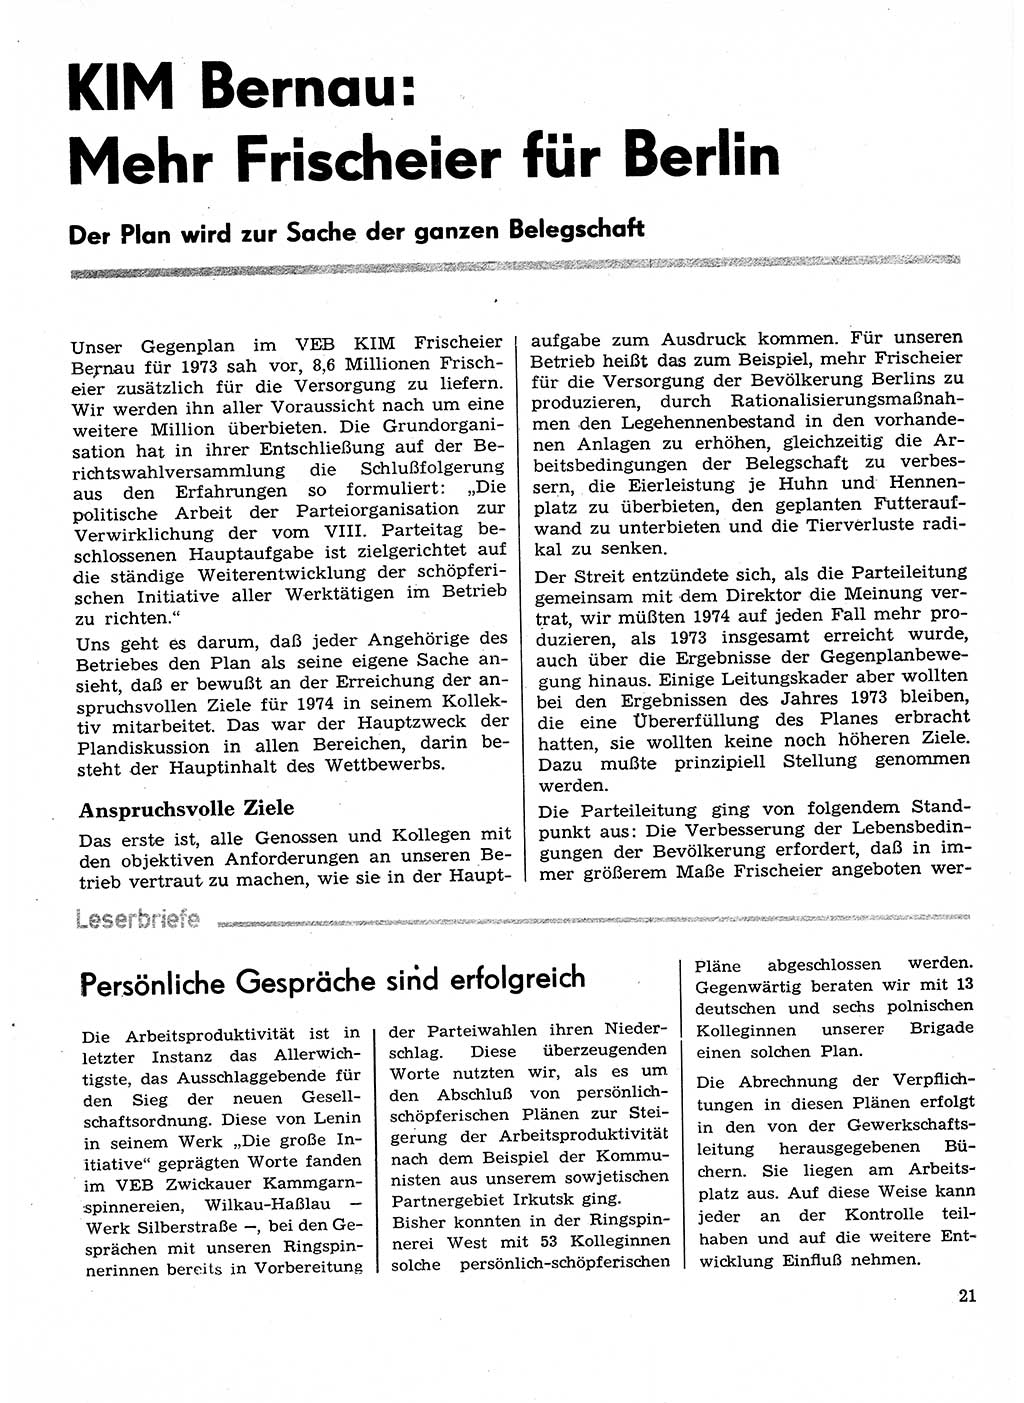 Neuer Weg (NW), Organ des Zentralkomitees (ZK) der SED (Sozialistische Einheitspartei Deutschlands) für Fragen des Parteilebens, 29. Jahrgang [Deutsche Demokratische Republik (DDR)] 1974, Seite 21 (NW ZK SED DDR 1974, S. 21)